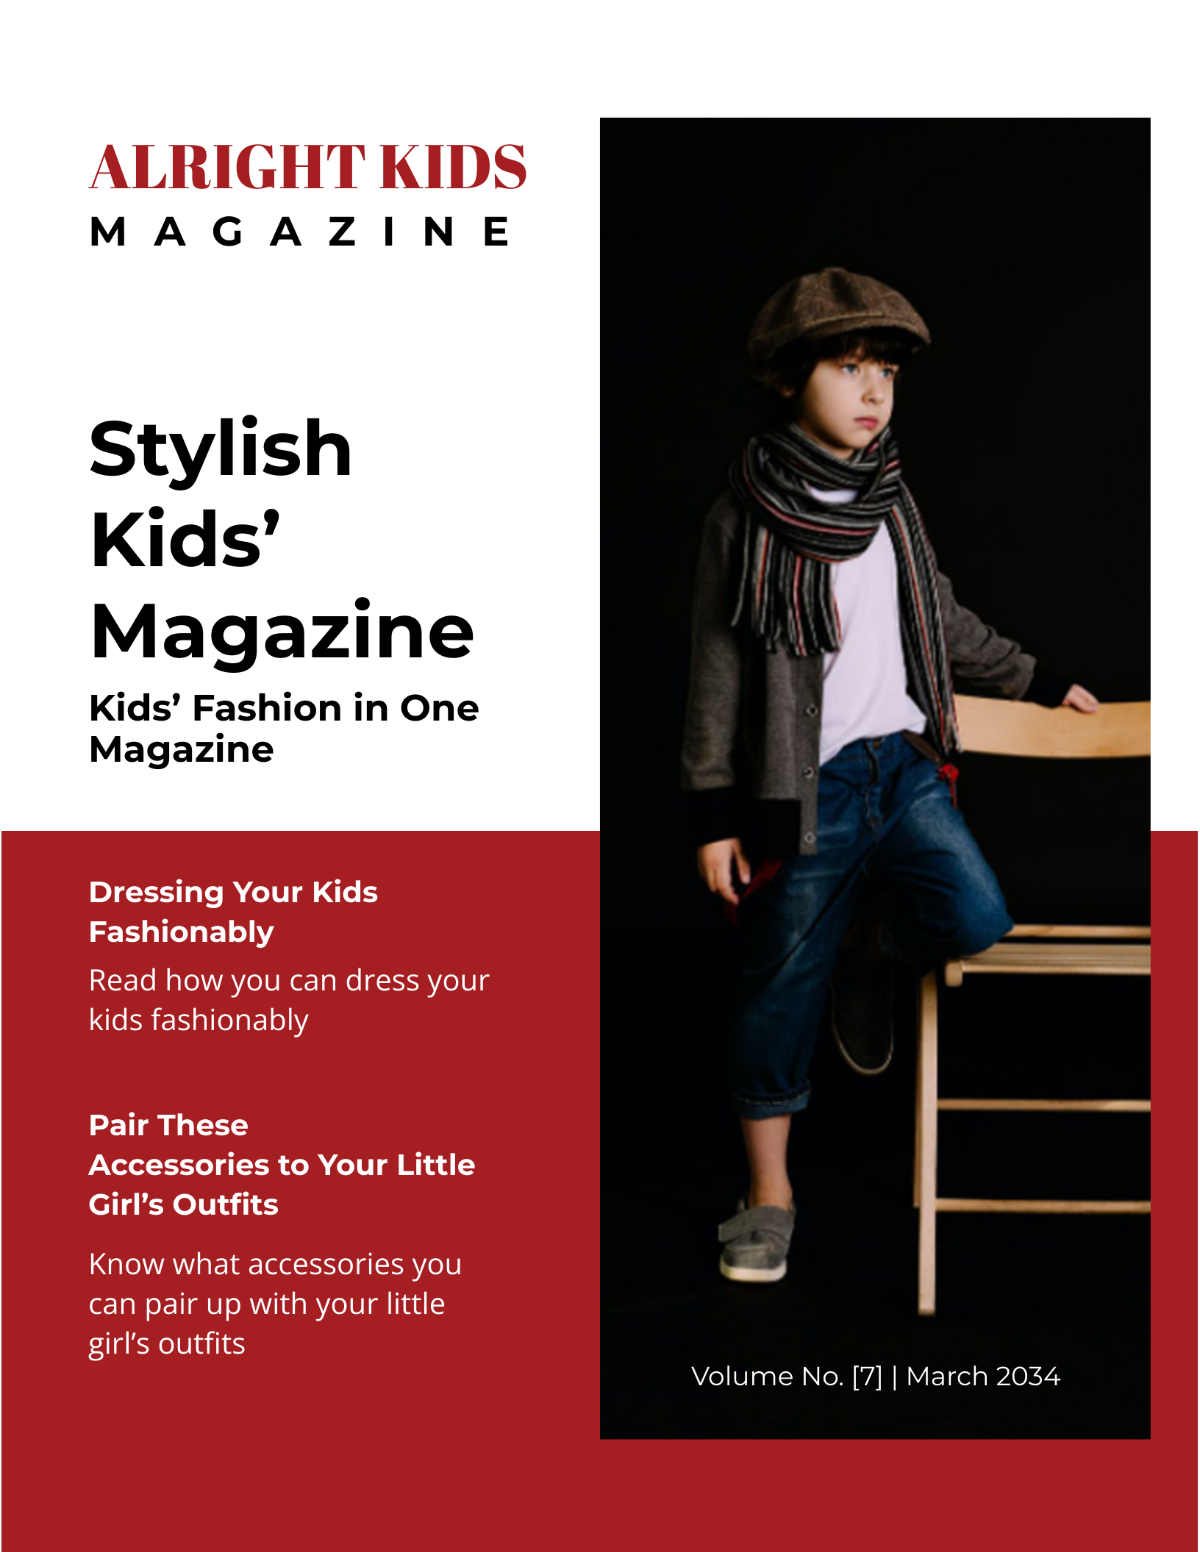 Stylish Kids' Magazine Template